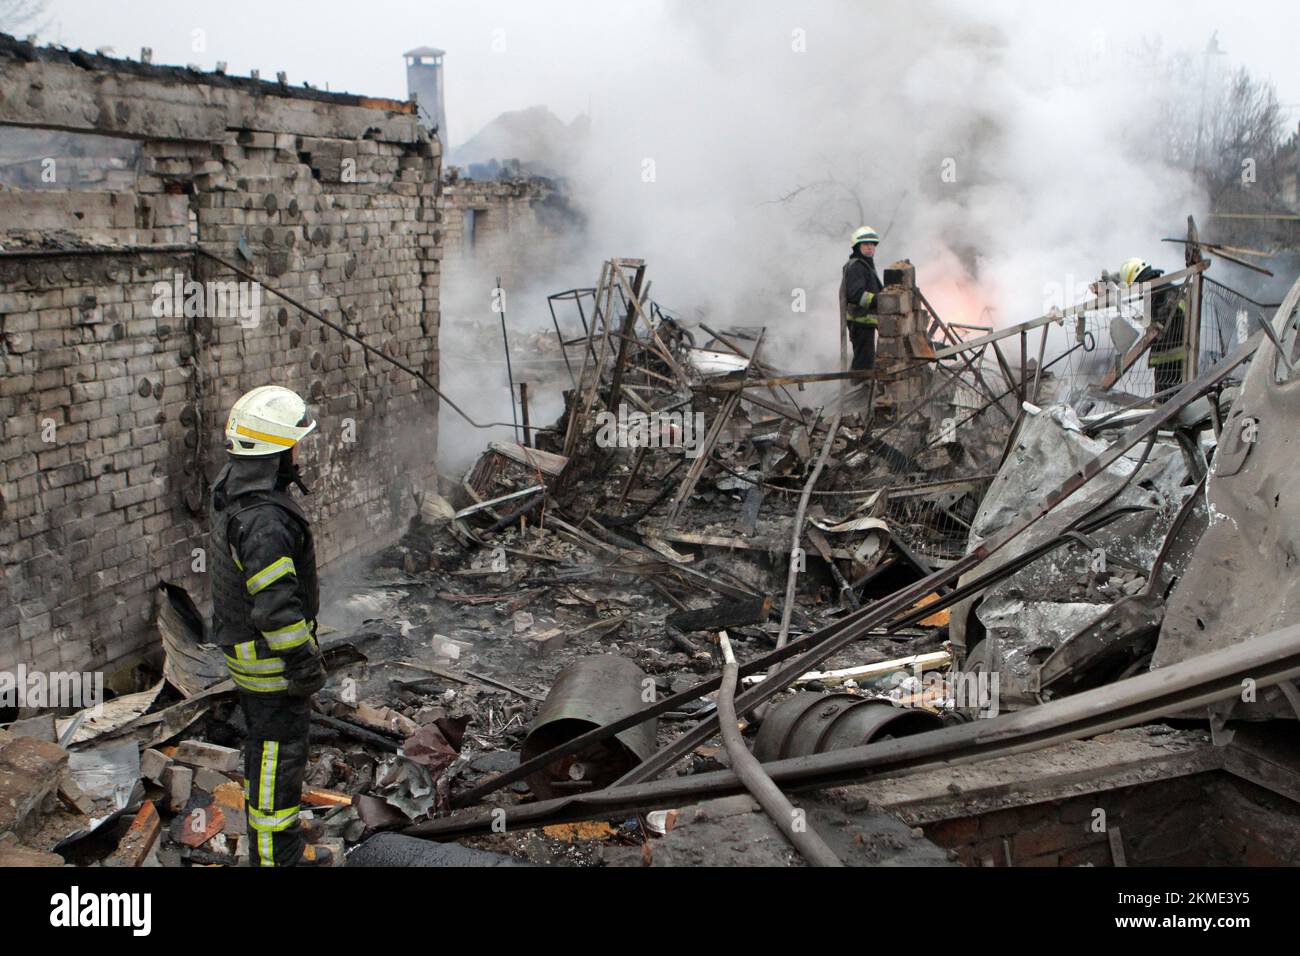 DNIPRO, UKRAINE - 26 NOVEMBRE 2022 - les sauveteurs retirent les décombres des ruines d'une maison après une attaque à la roquette russe contre Dnipro, en Ukraine centrale. Comme on l'a signalé, six personnes ont été blessées et sept maisons privées ont été partiellement détruites. Banque D'Images